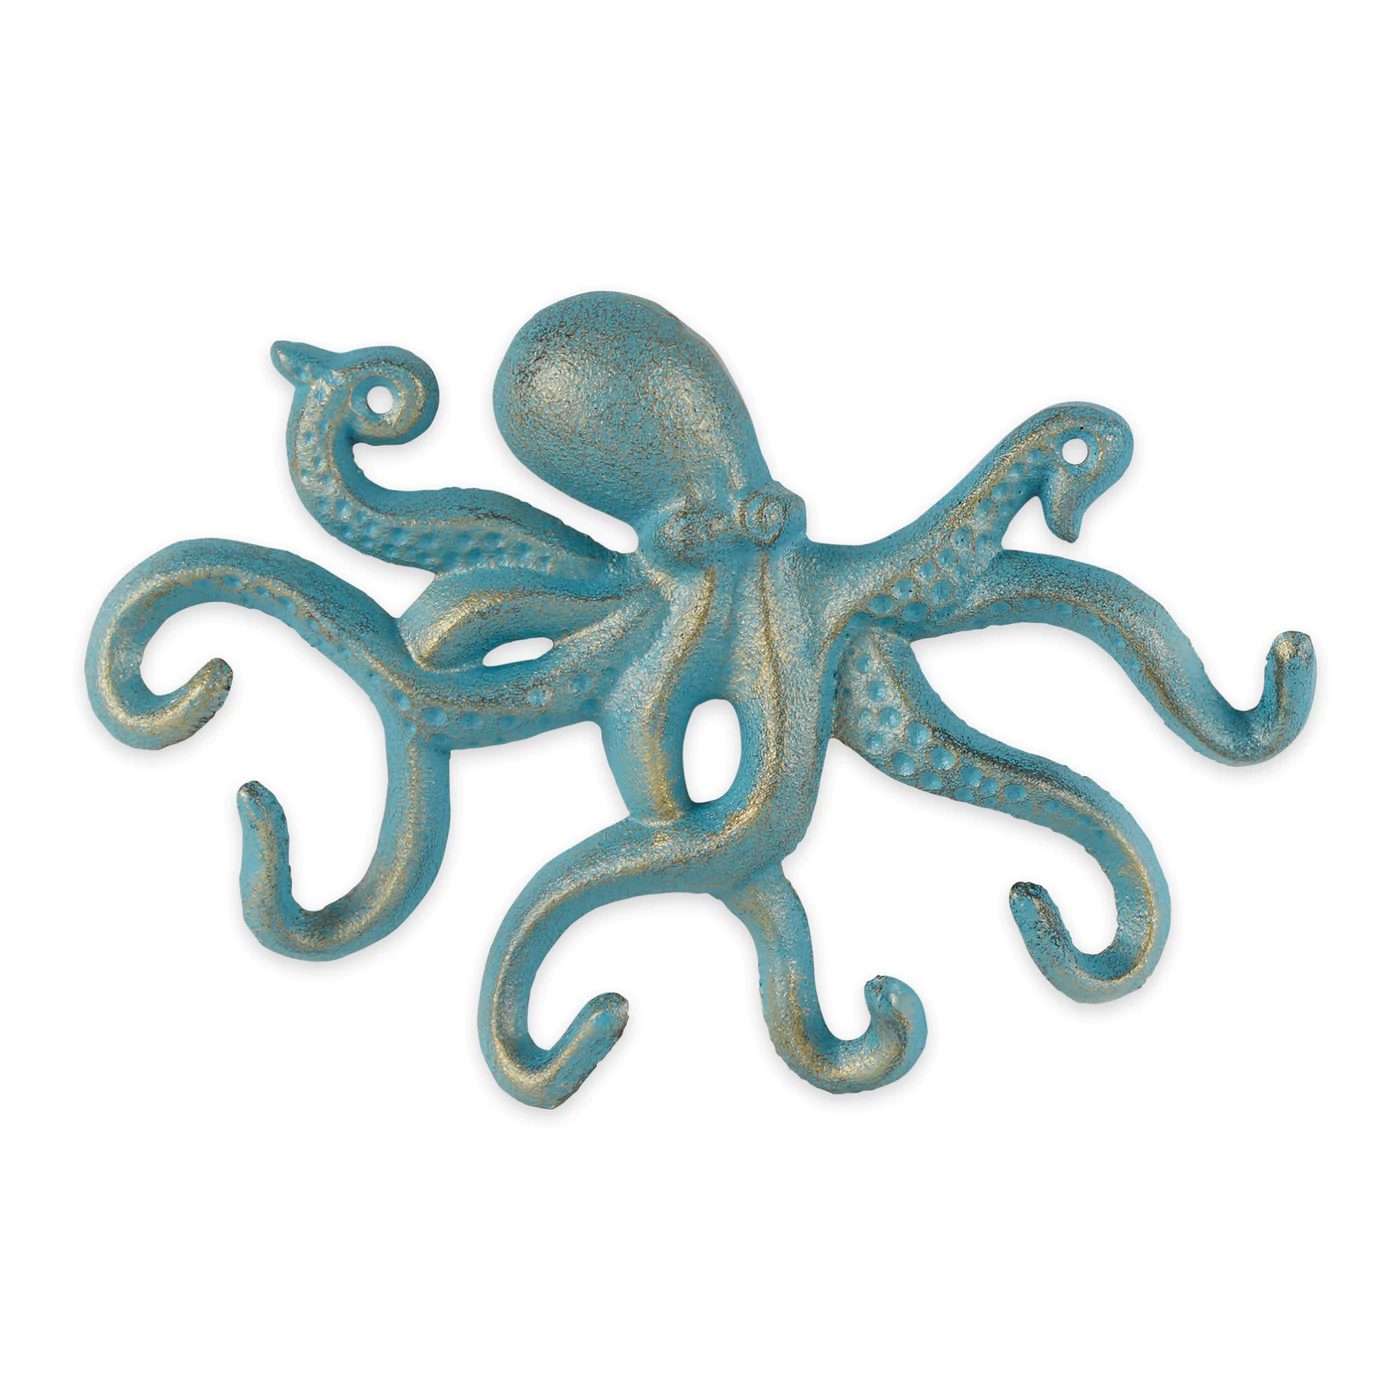 Octopus Wall Hook - $24.56